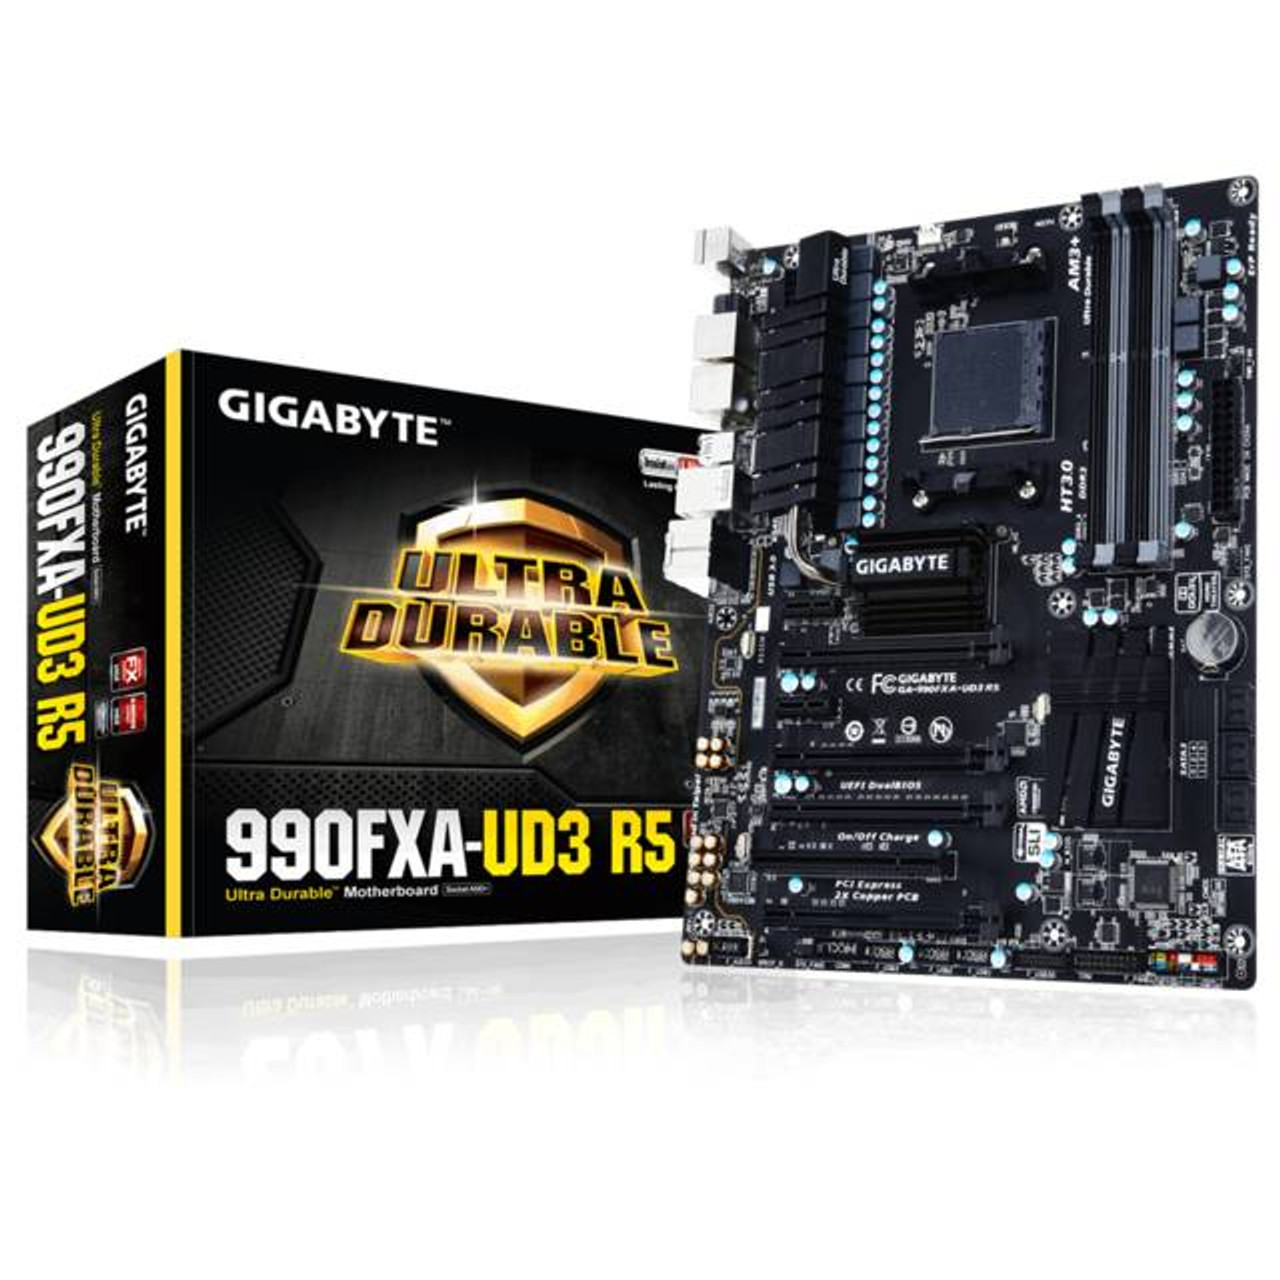 GIGABYTEGA-990FXA-UD3-R5 Socket AM3+/ AMD 990FX/ DDR3/ 2-Way CrossFireX&2-Way SLI/ SATA3&USB3.0/ A&GbE/ ATX Motherboard